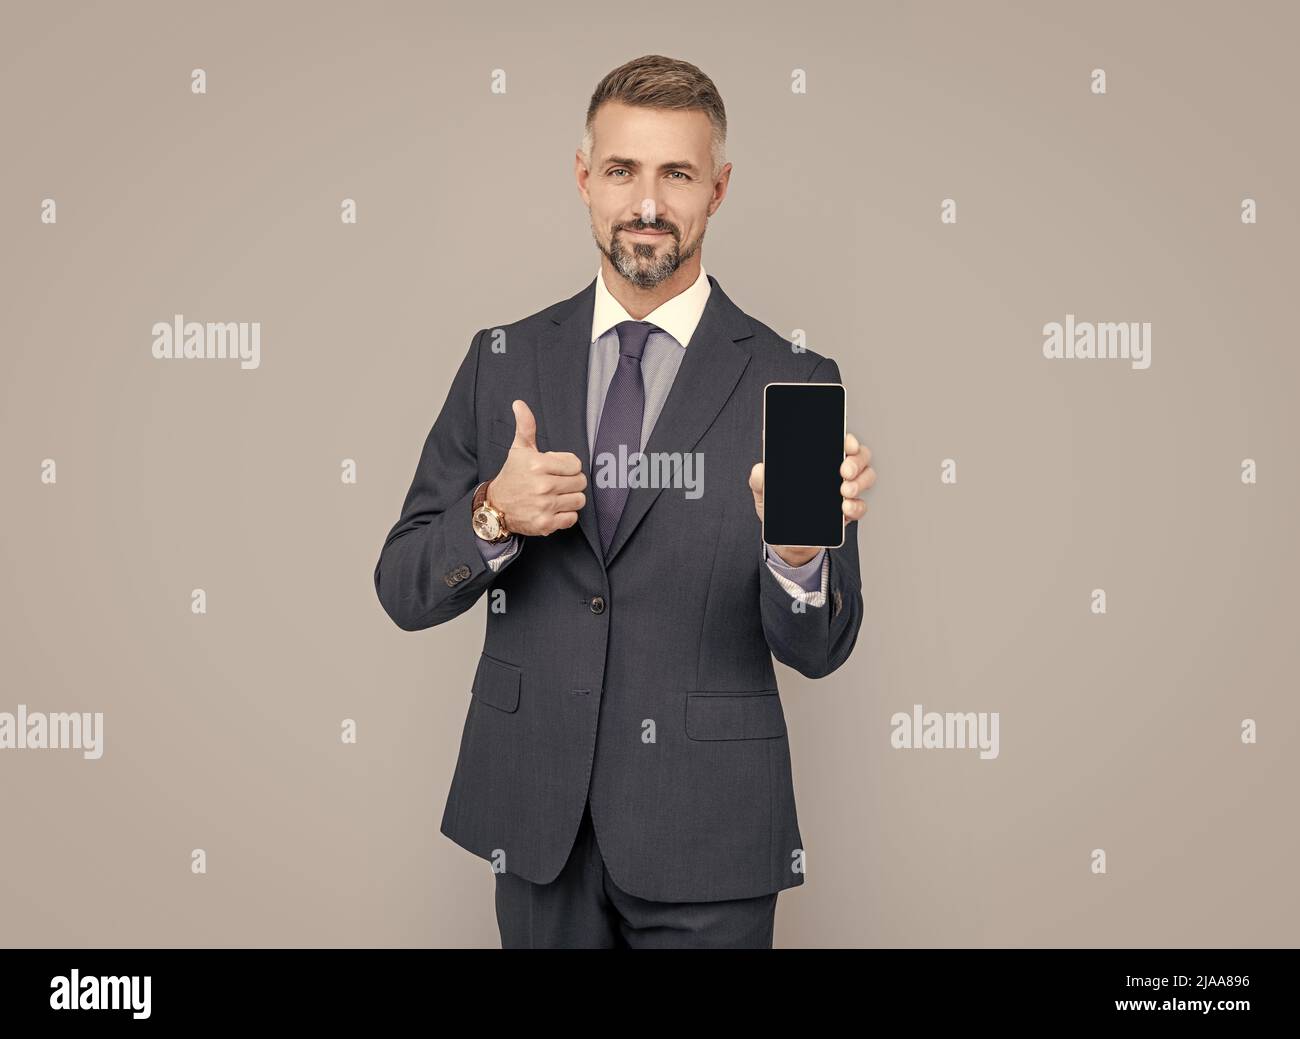 homme mature influenceur en costume présentant l'appareil de téléphone mobile et montrer le pouce vers le haut, meilleure offre. Banque D'Images